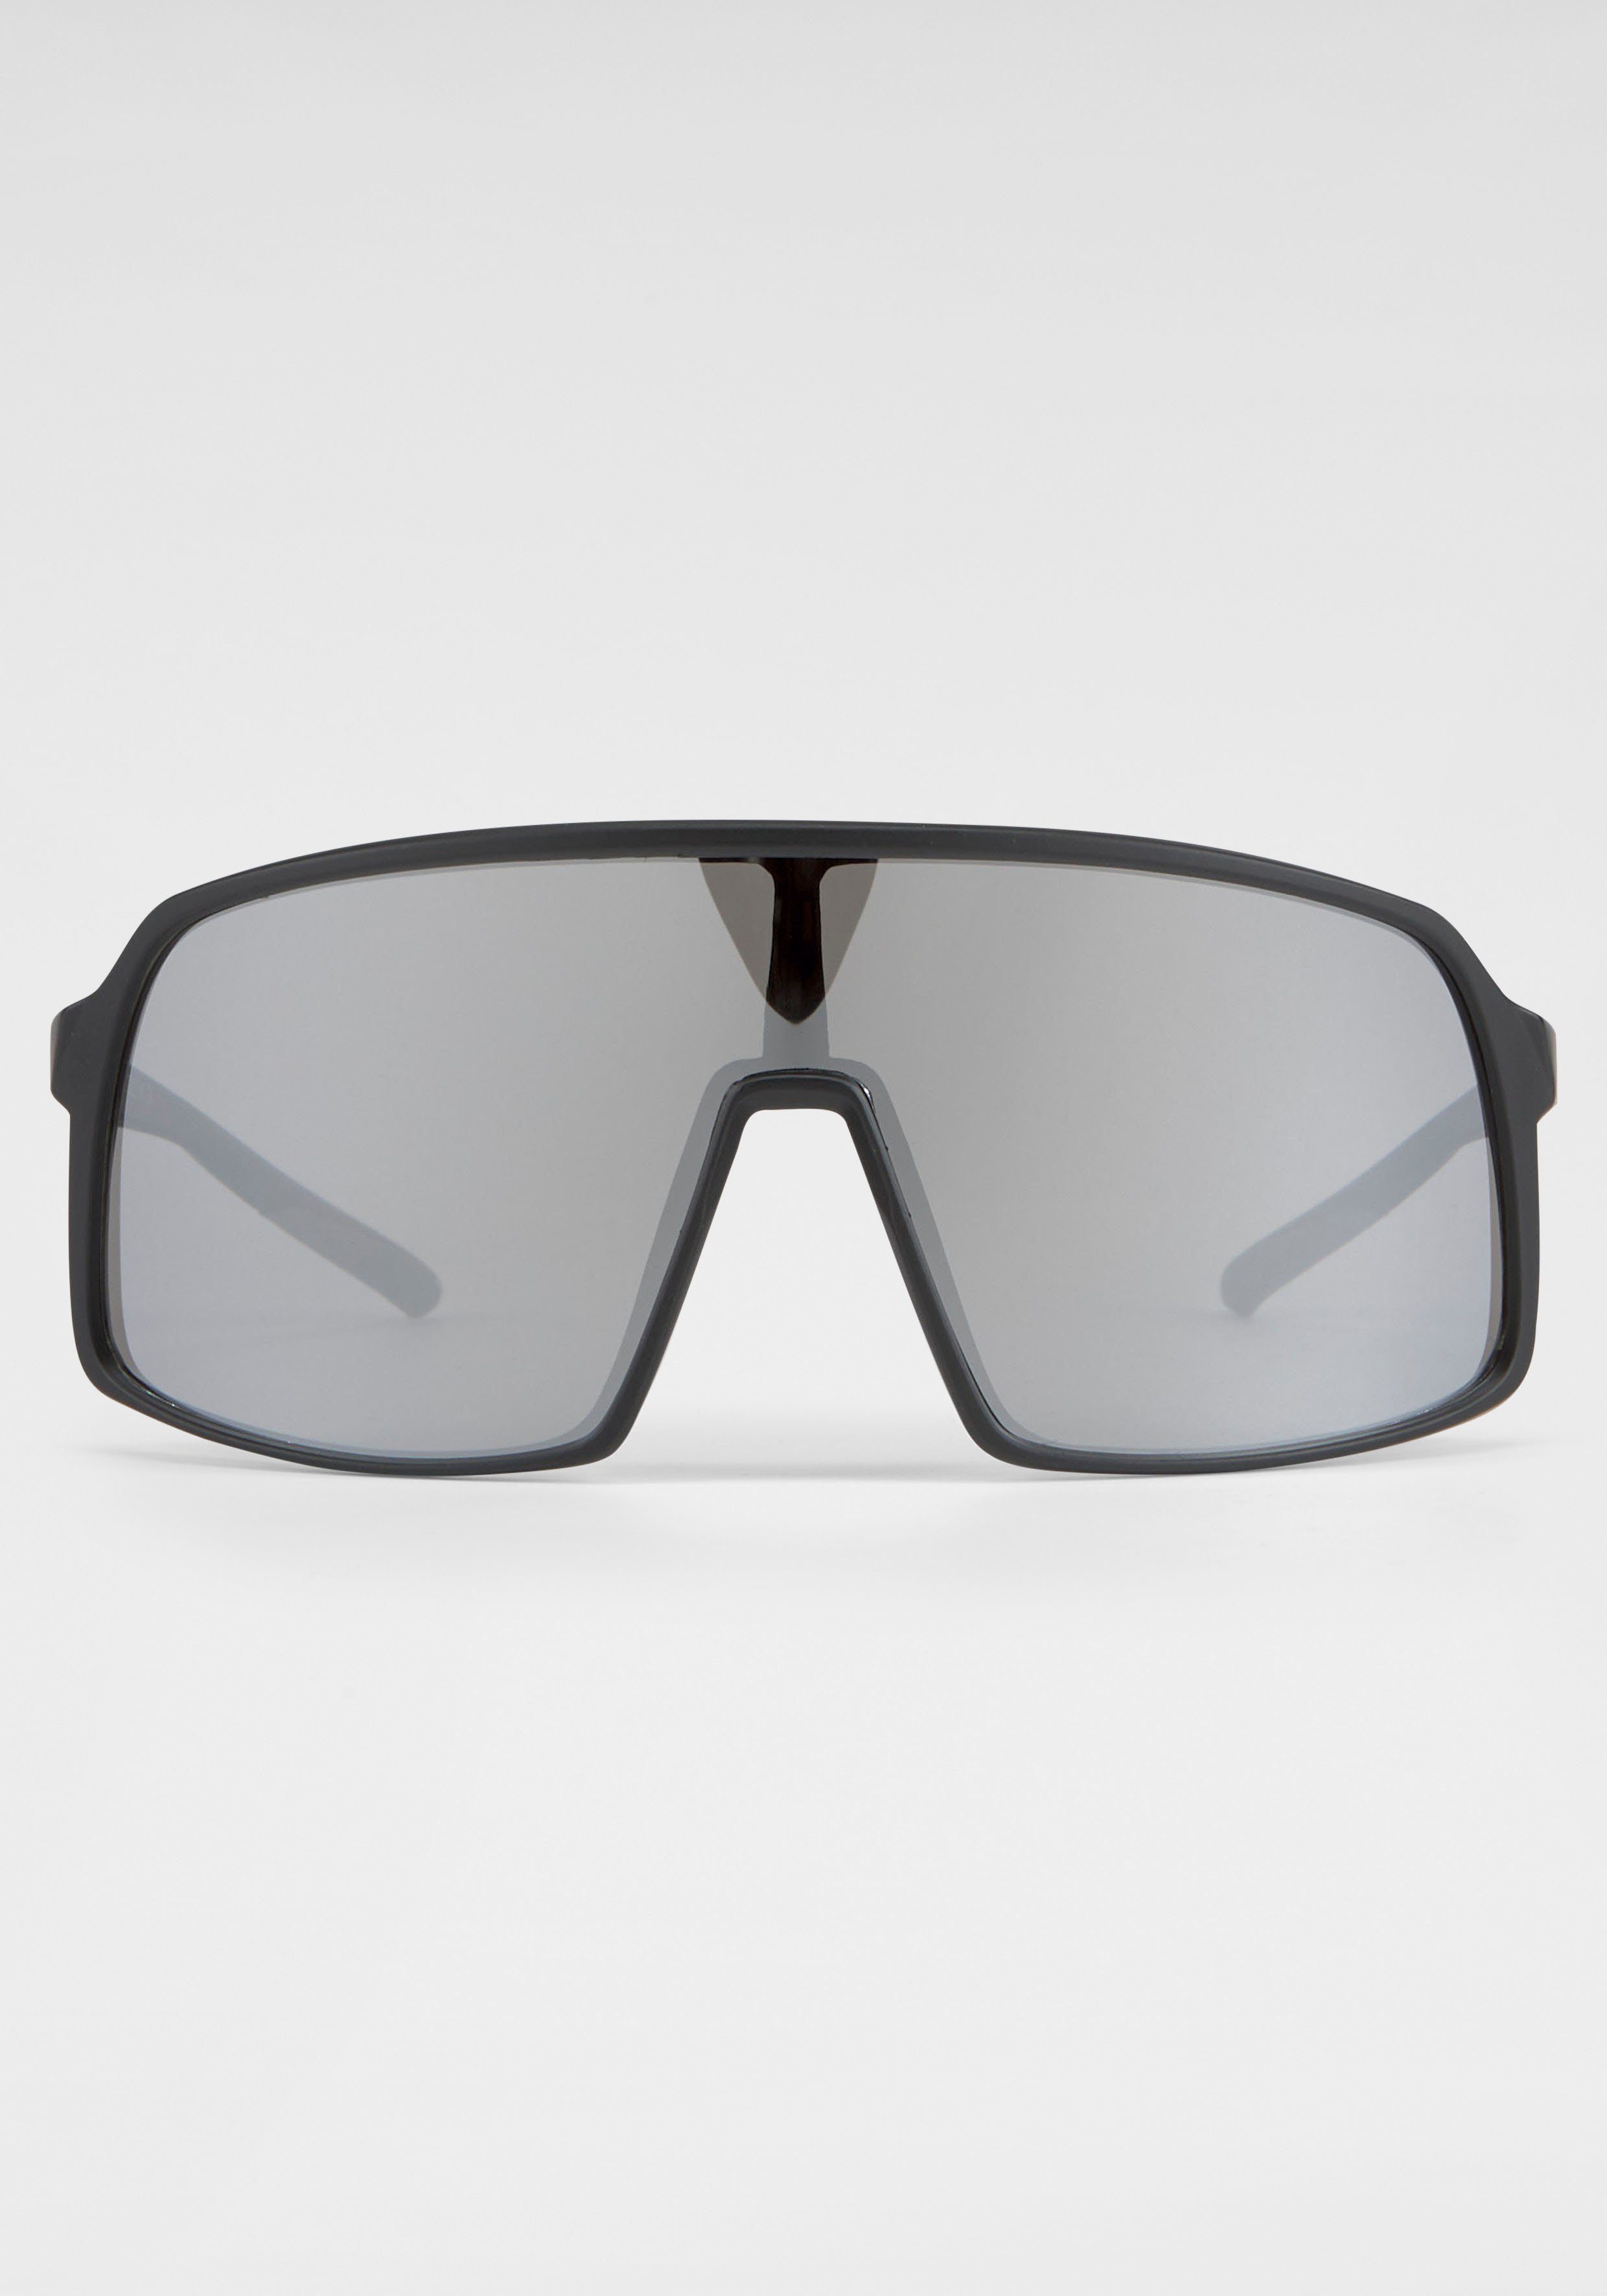 Sonnenbrille Gläser BACK BLACK große Eyewear IN schwarz-silber